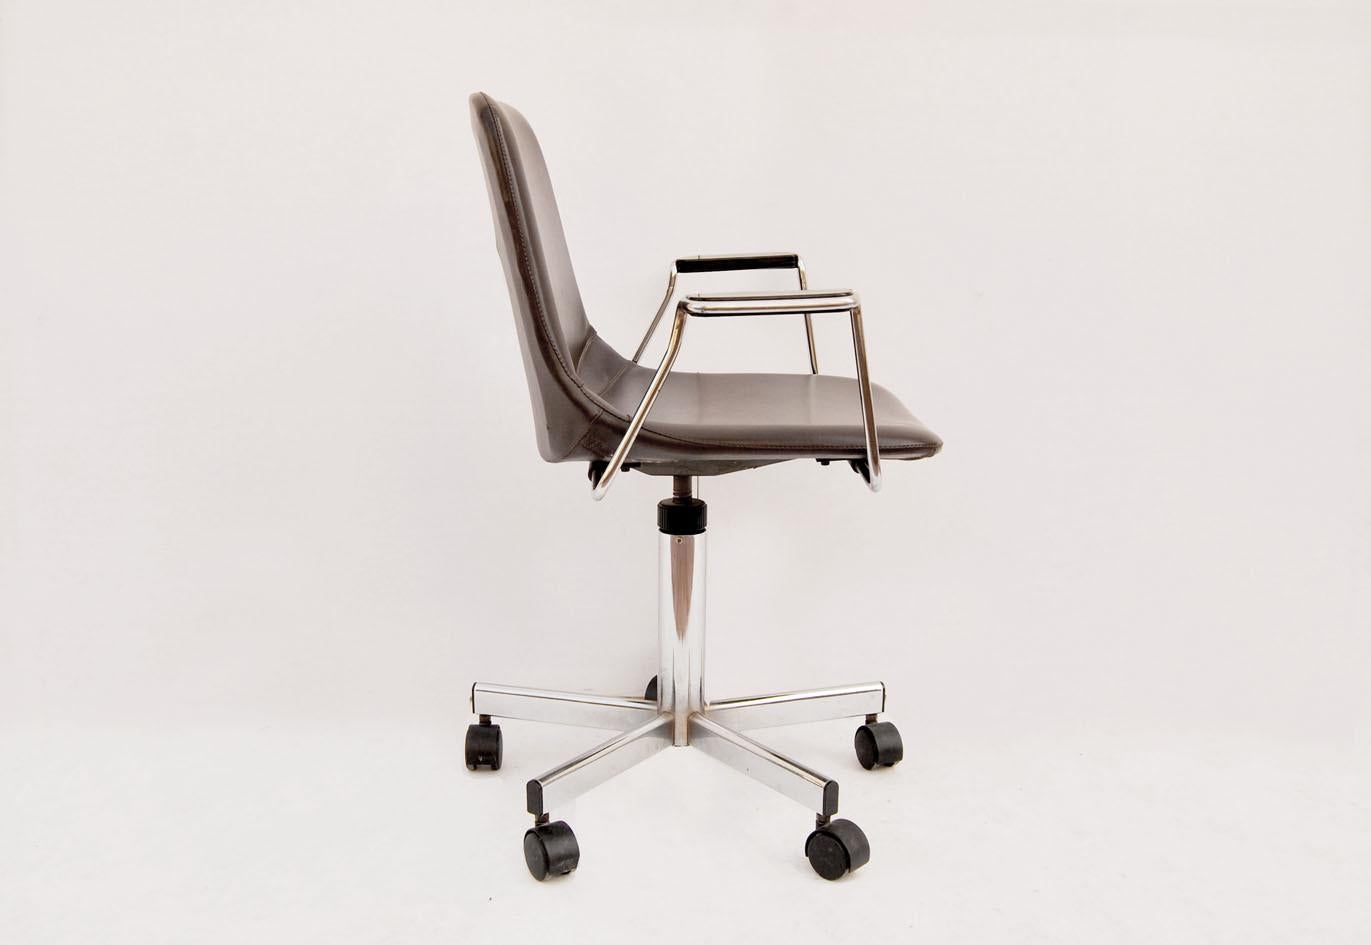 Schöner Vintage-Schreibtischstuhl aus den 1980er Jahren.
Der in Italien von MIM mim mobili spa hergestellte Stuhl hat ein verchromtes Metallgestell mit integrierter Sitzfläche und Rückenlehne, gepolstert und bezogen mit dunkelbraunem Kunstleder, mit